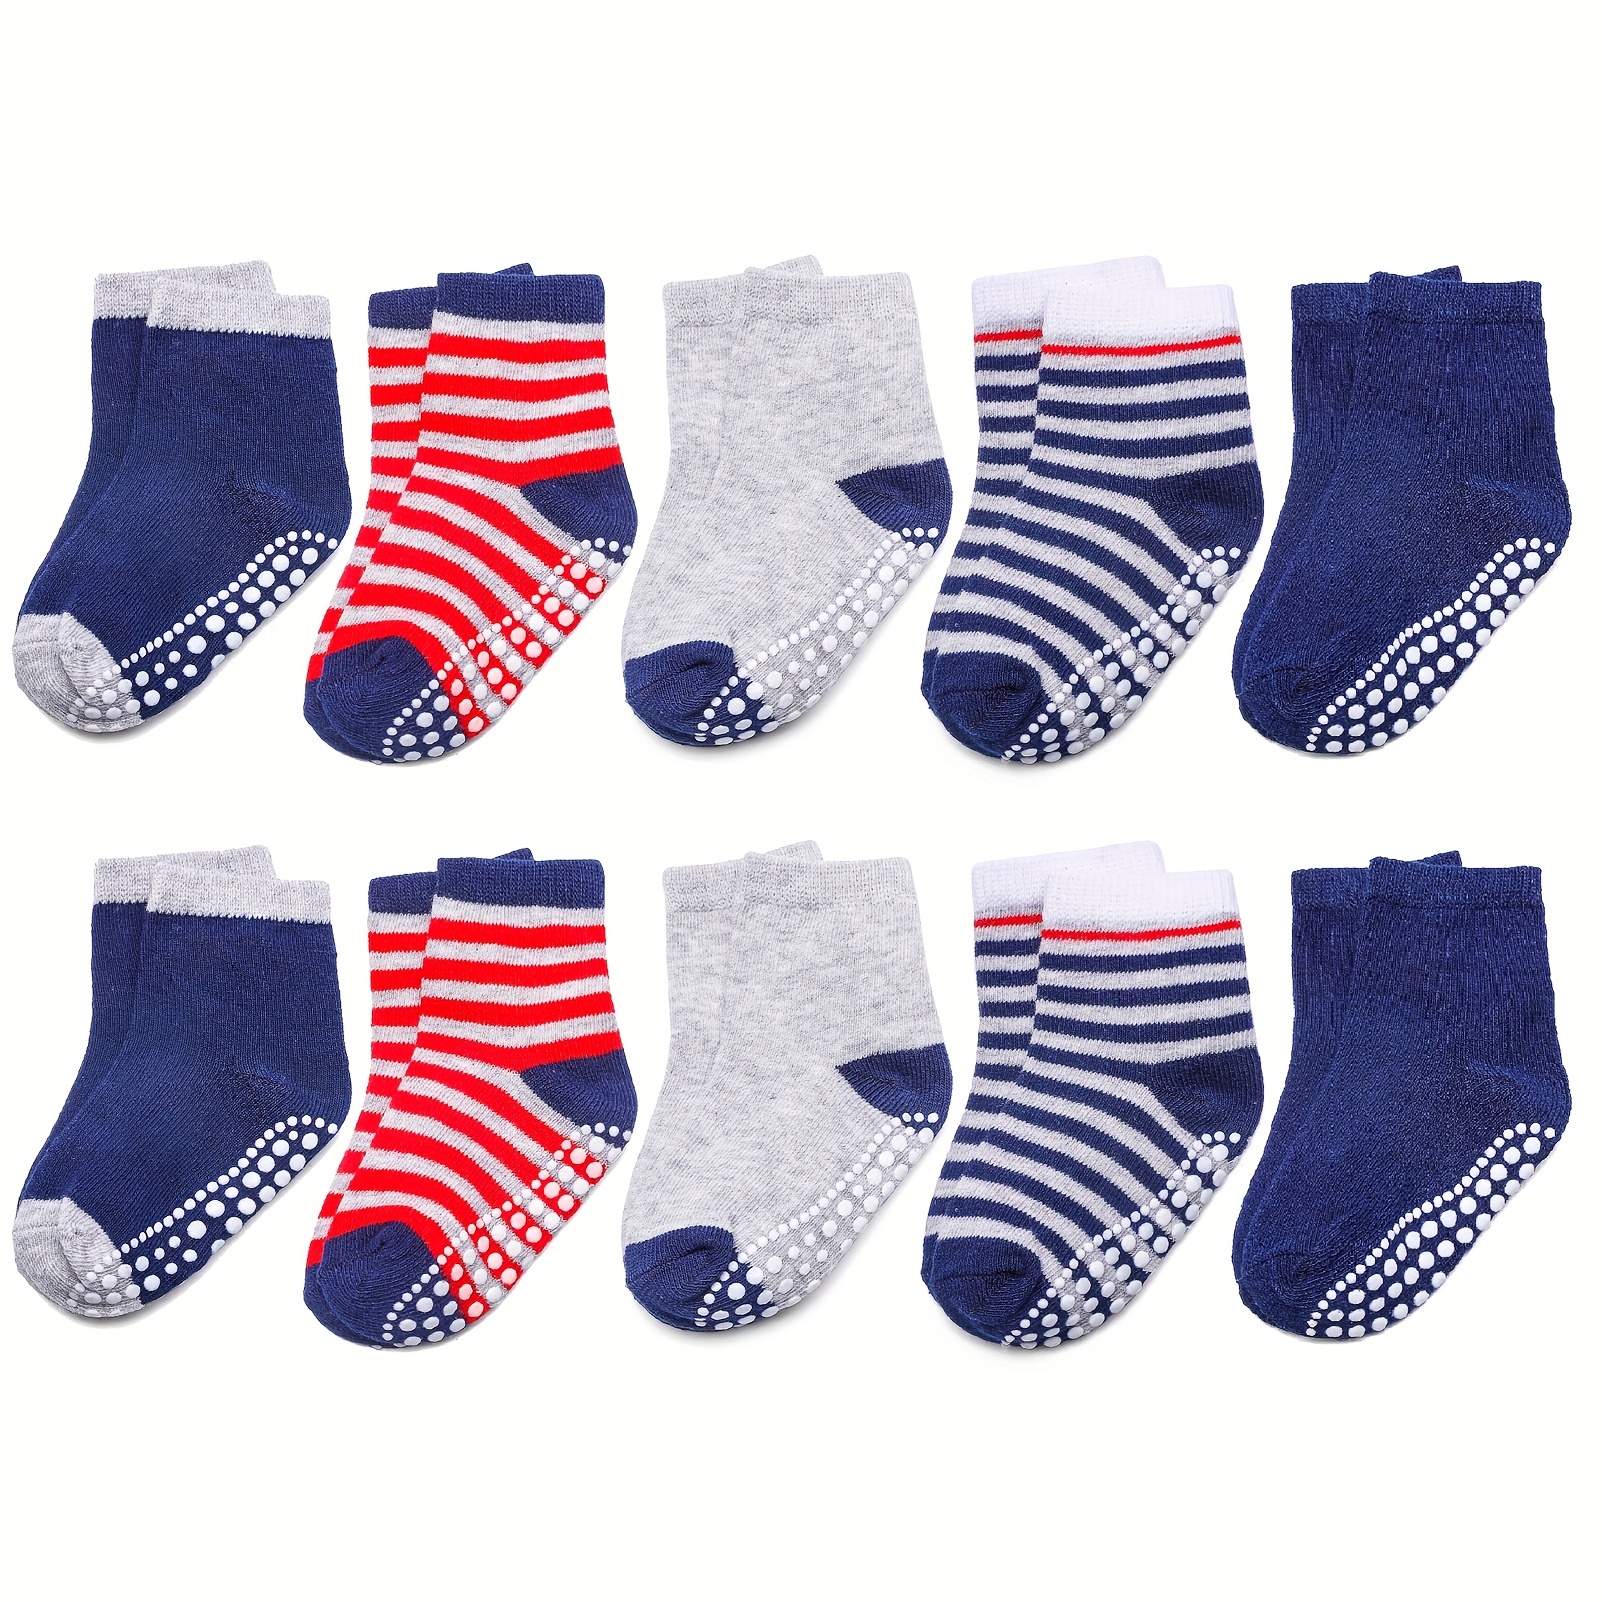 In Extenso Lote de 10 pares de calcetines para niño inextenso